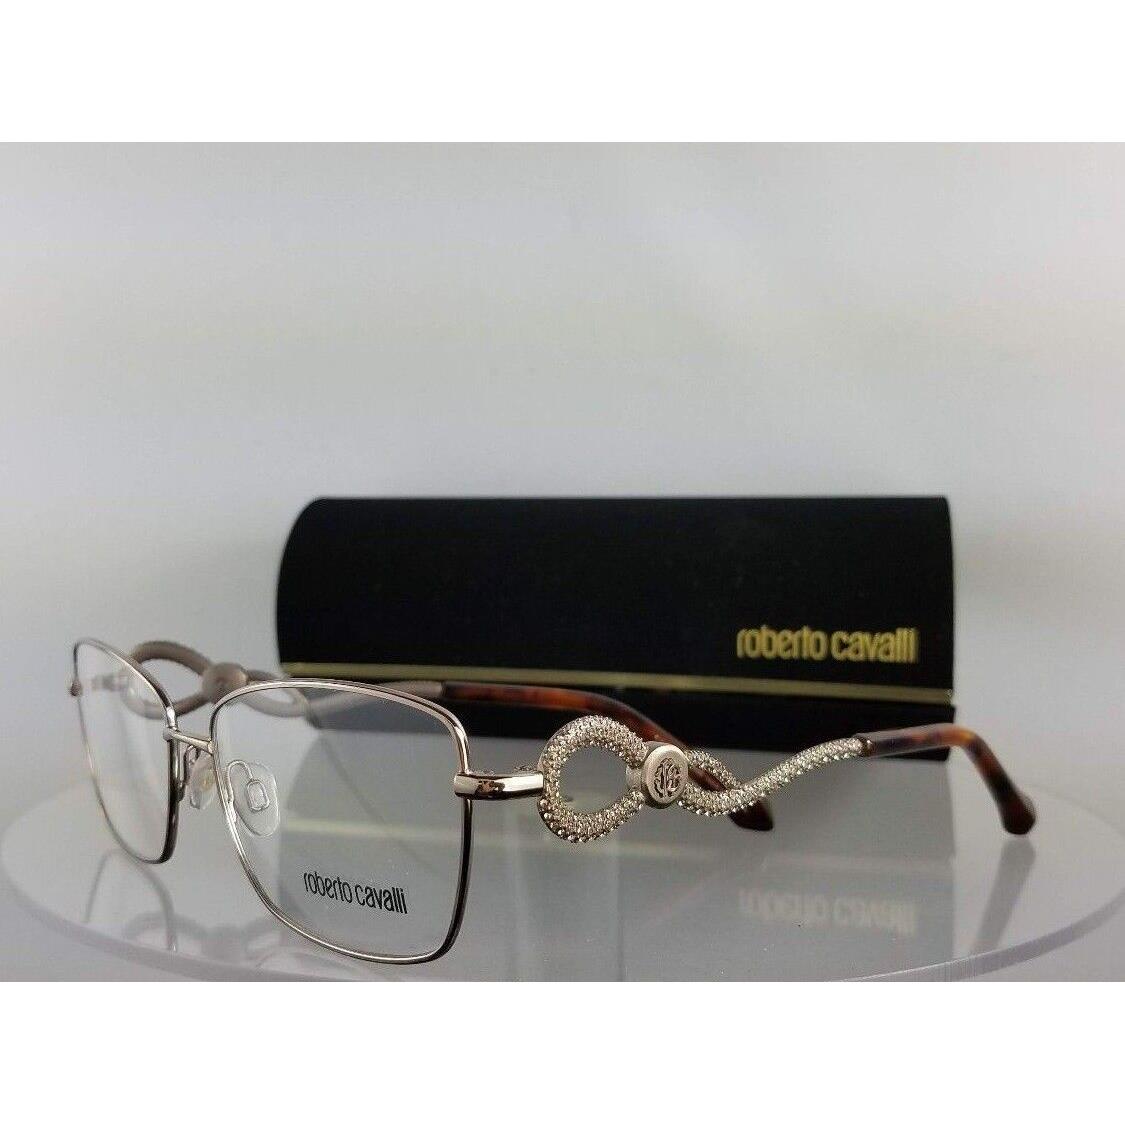 Roberto Cavalli eyeglasses  - Silver/tortoise Frame, Clear Lens 1